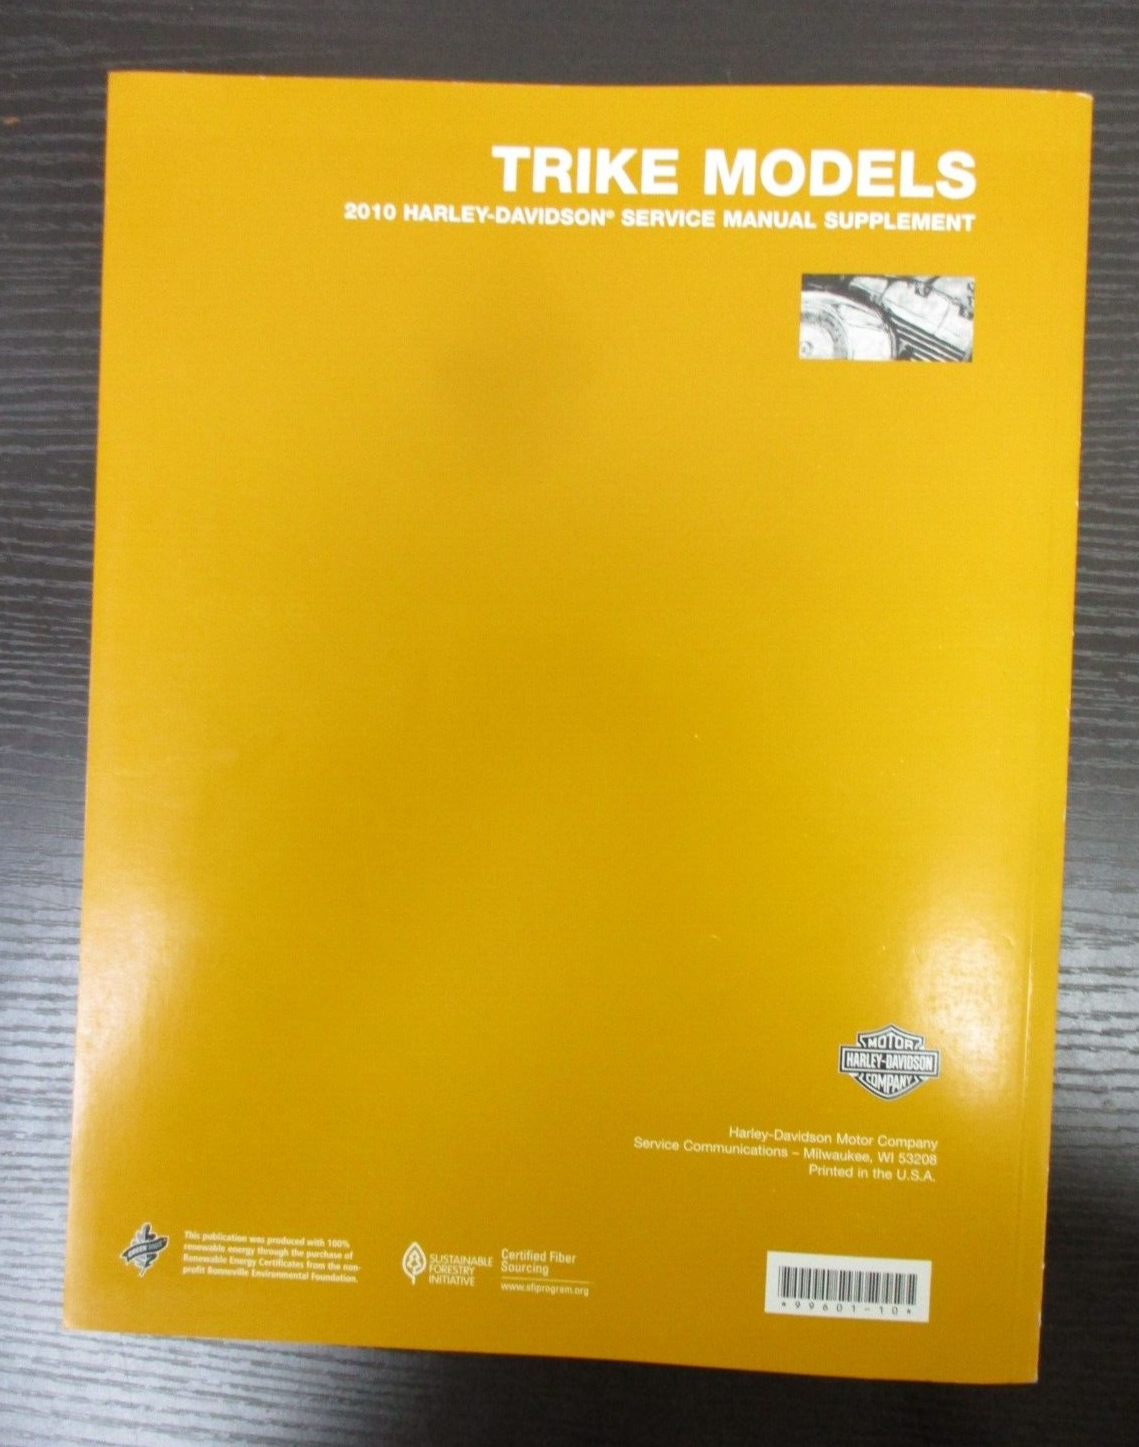 Harley-Davidson Trike Models 2010 Service Manual Supplement 99601-10